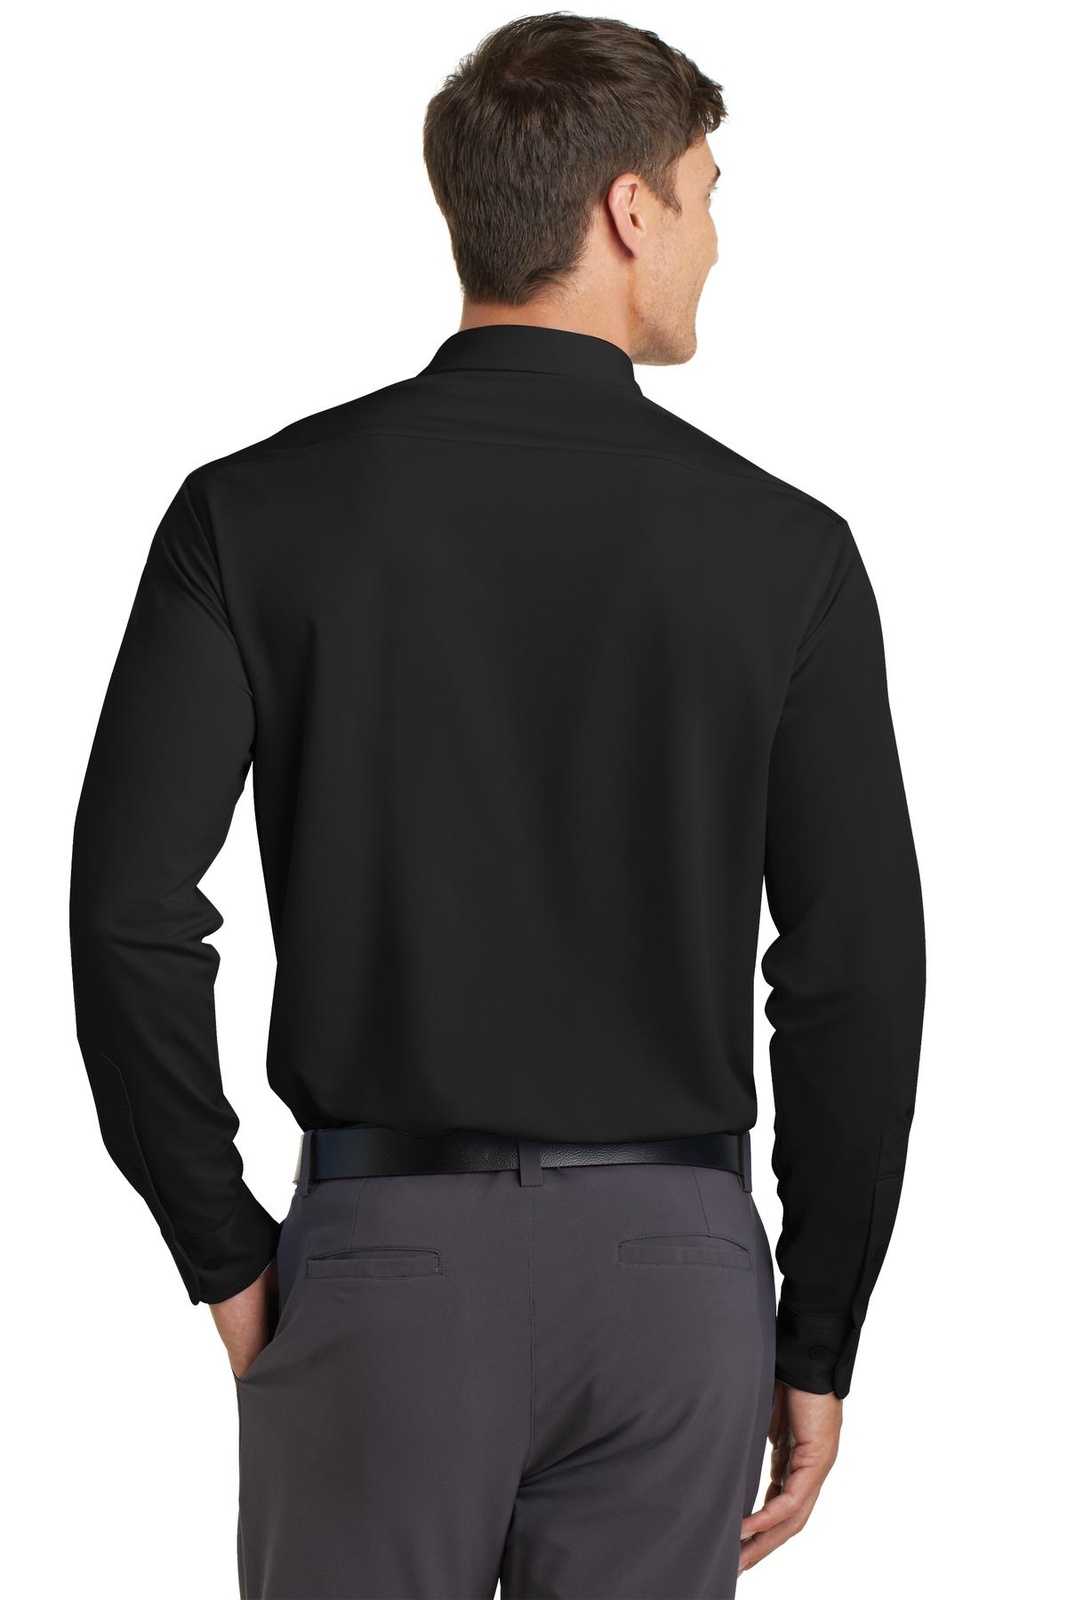 Port Authority K570 Dimension Knit Dress Shirt - Black - HIT a Double - 1